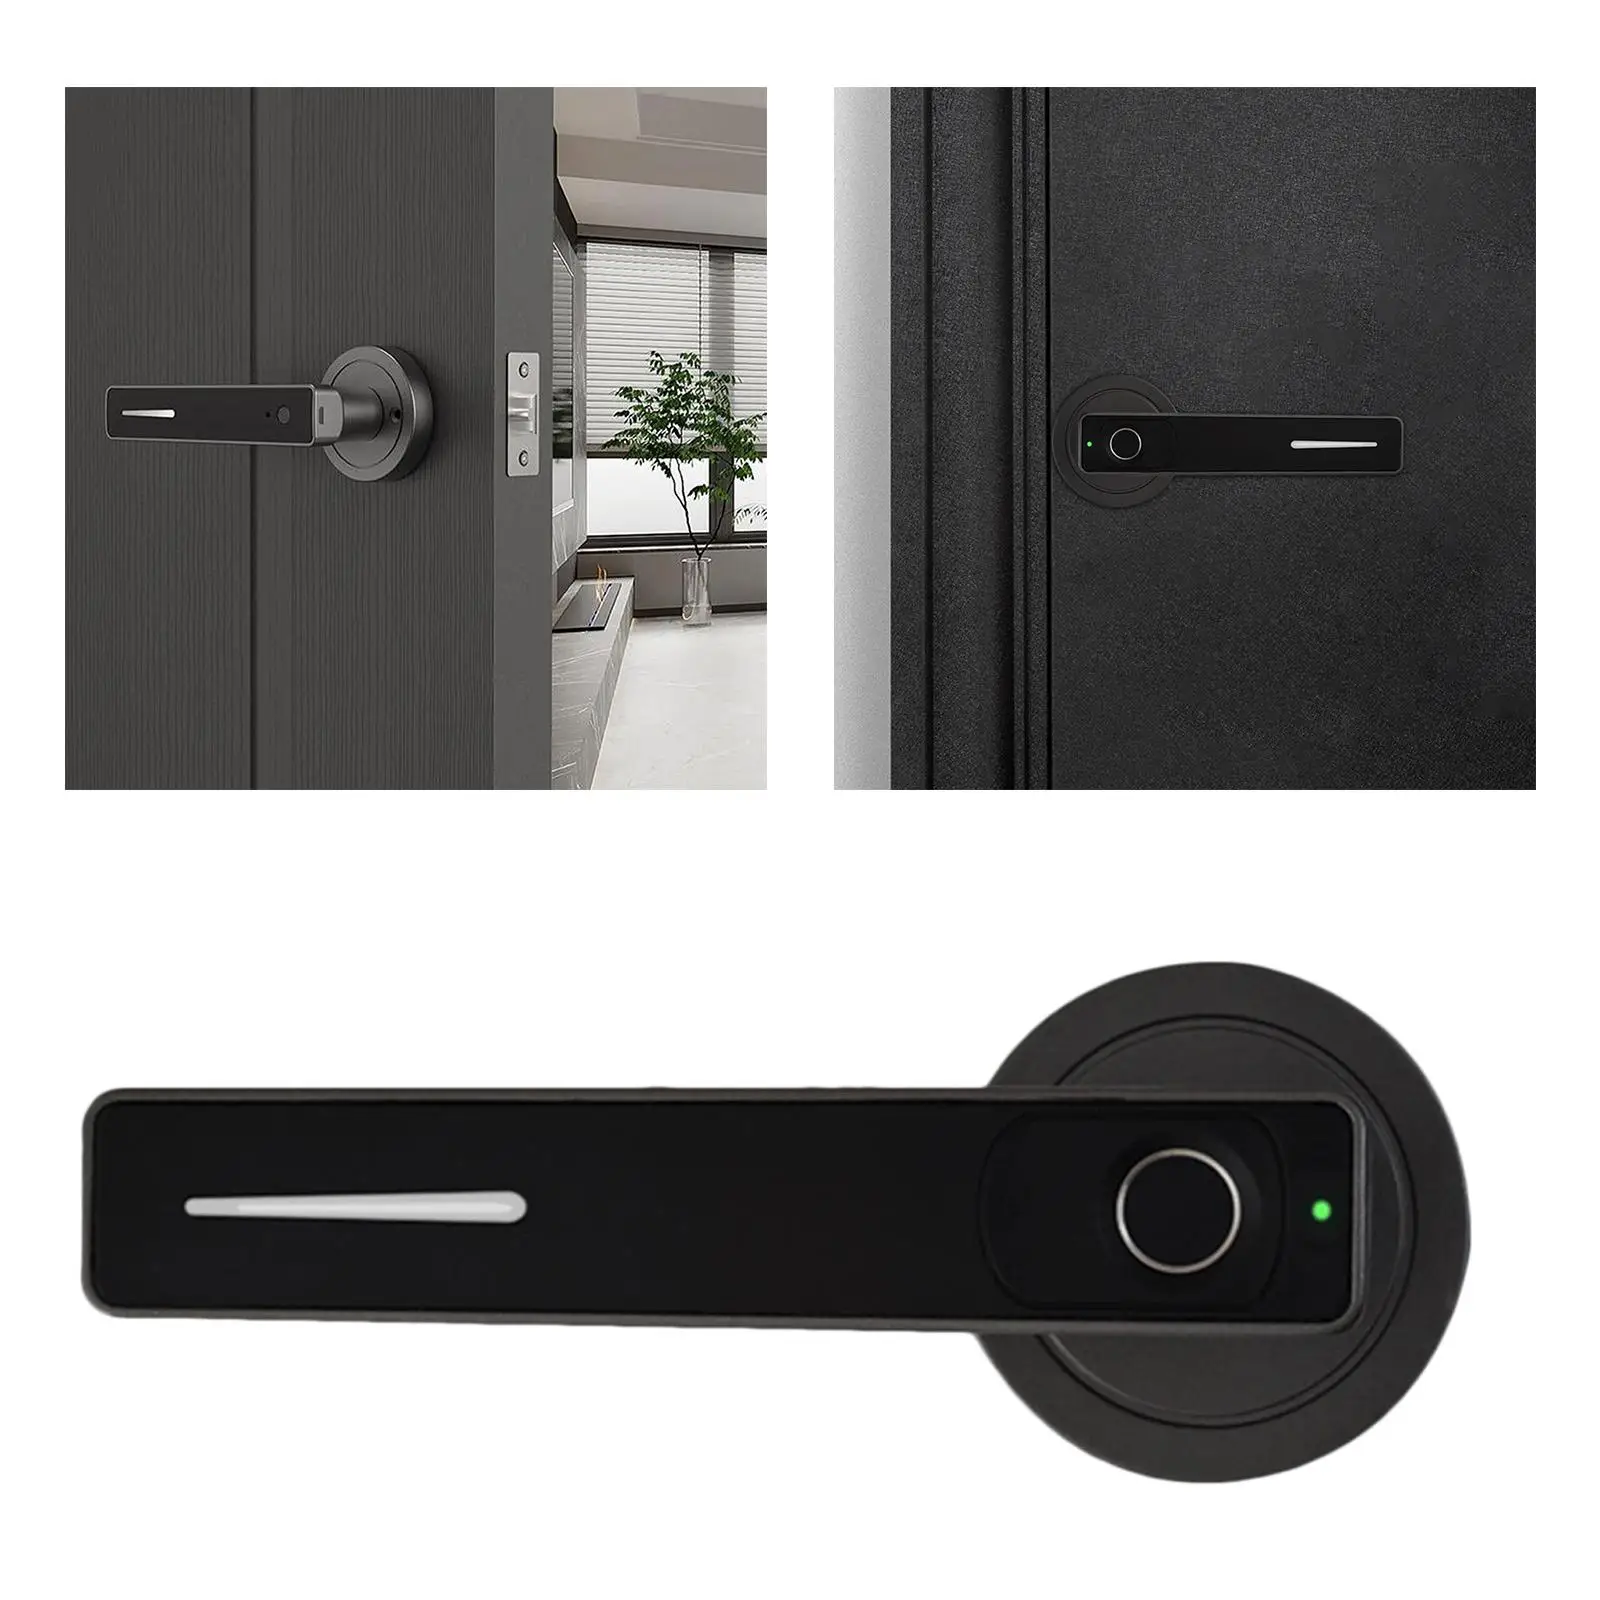  Fingerprint Door Lock, Intelligent Electronic Digital Door Lock,Biometric Lock 